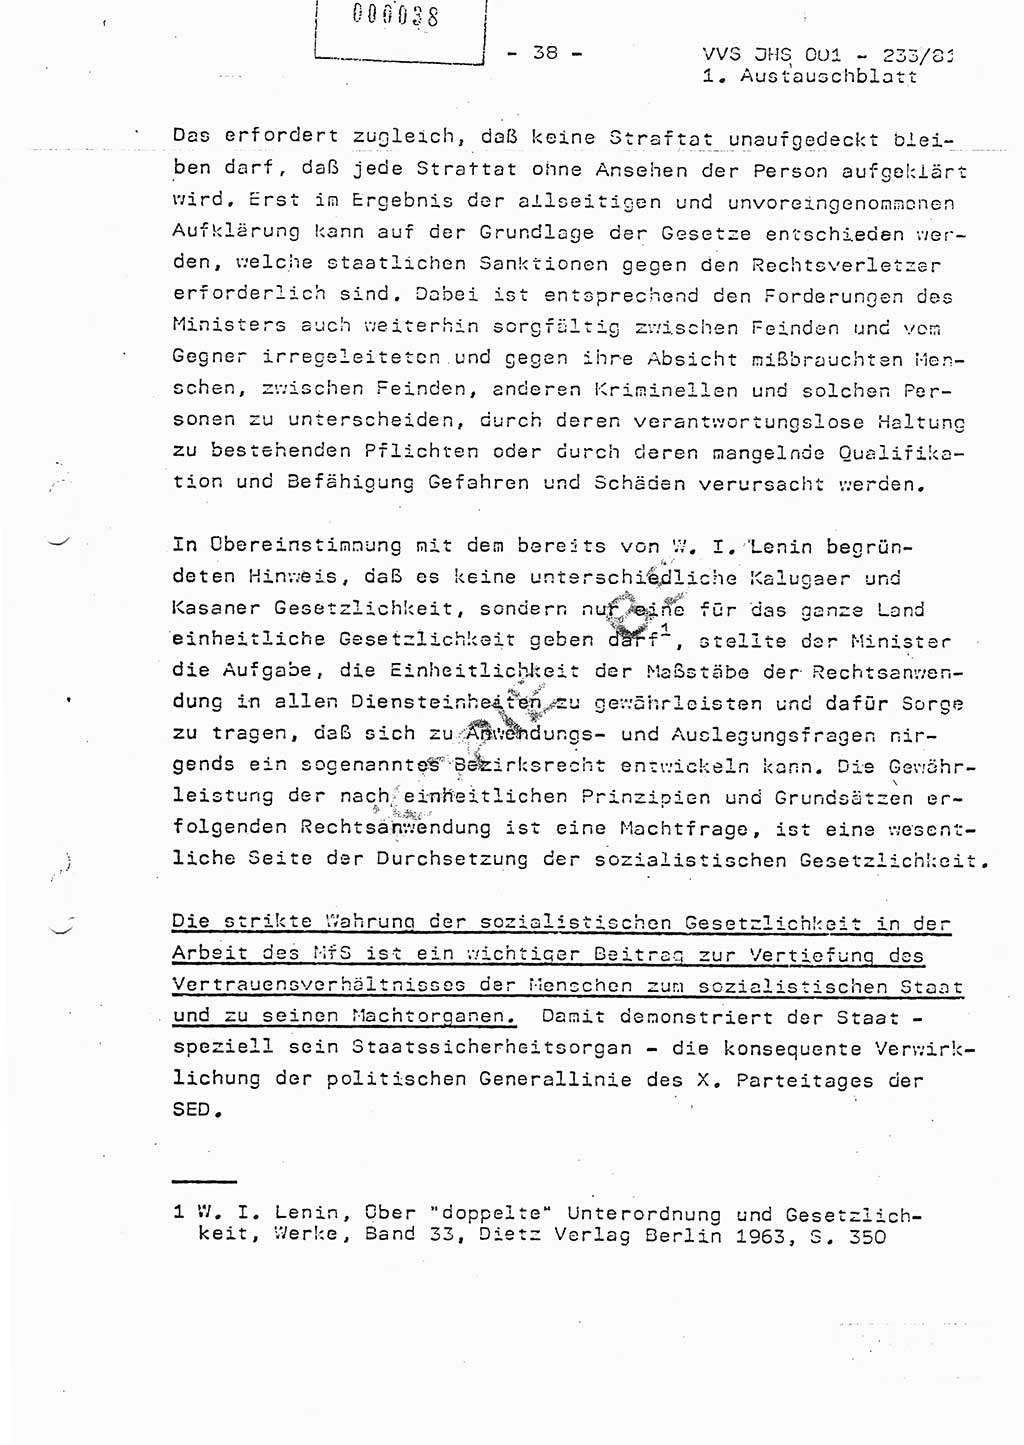 Dissertation Oberstleutnant Horst Zank (JHS), Oberstleutnant Dr. Karl-Heinz Knoblauch (JHS), Oberstleutnant Gustav-Adolf Kowalewski (HA Ⅸ), Oberstleutnant Wolfgang Plötner (HA Ⅸ), Ministerium für Staatssicherheit (MfS) [Deutsche Demokratische Republik (DDR)], Juristische Hochschule (JHS), Vertrauliche Verschlußsache (VVS) o001-233/81, Potsdam 1981, Blatt 38 (Diss. MfS DDR JHS VVS o001-233/81 1981, Bl. 38)